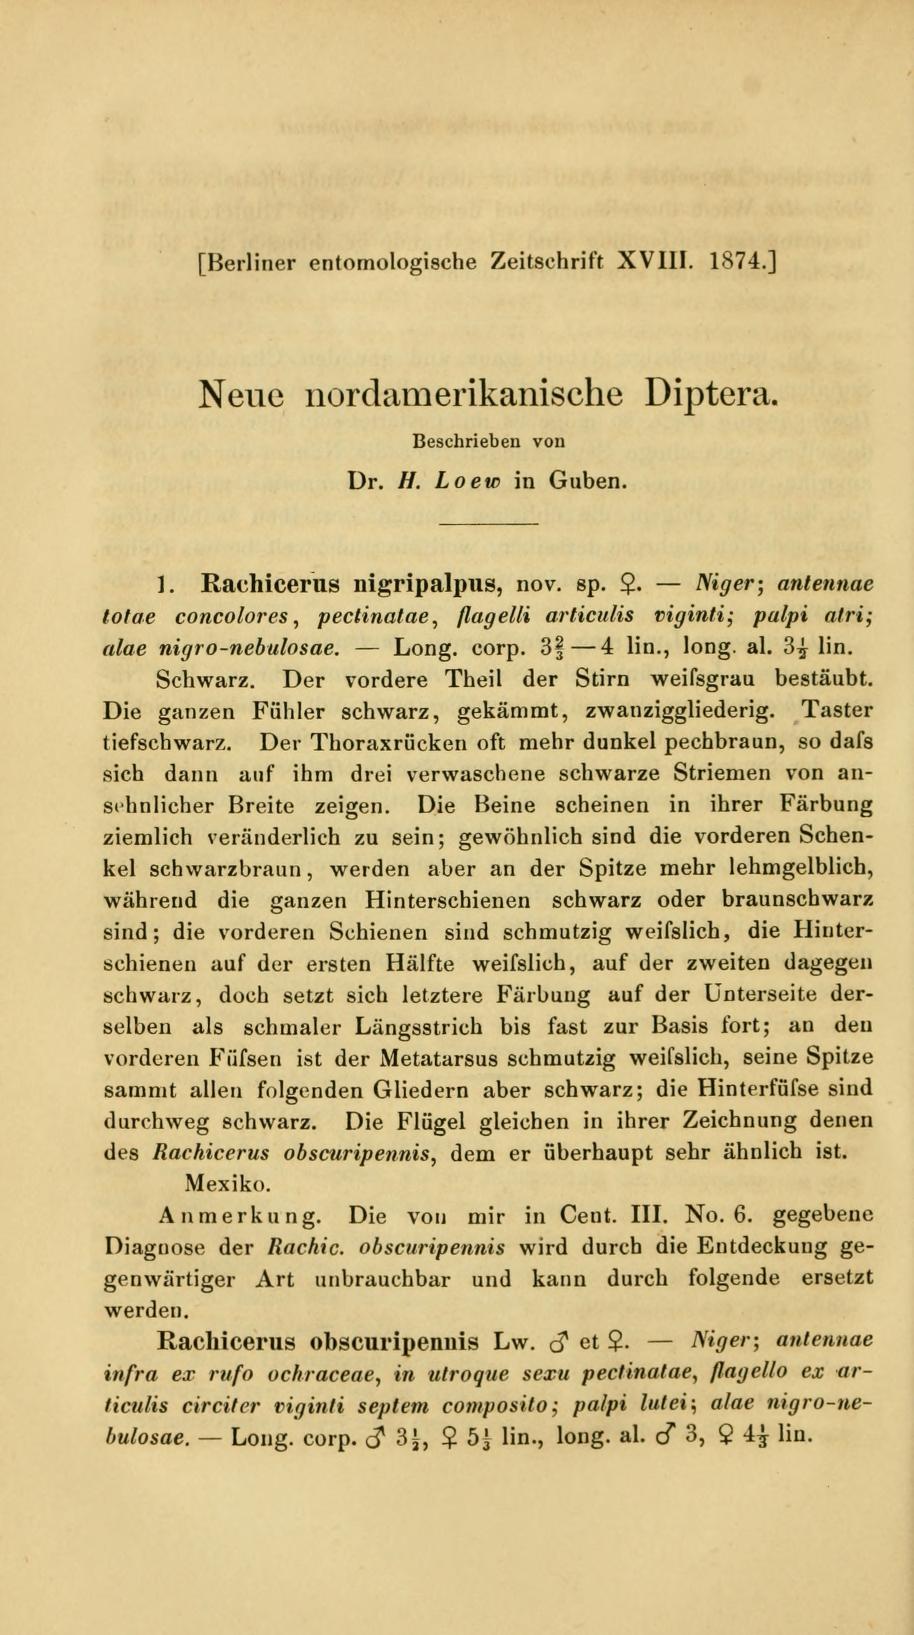 Media of type text, Loew 1874. Description:Neue nordamerikanische Diptera